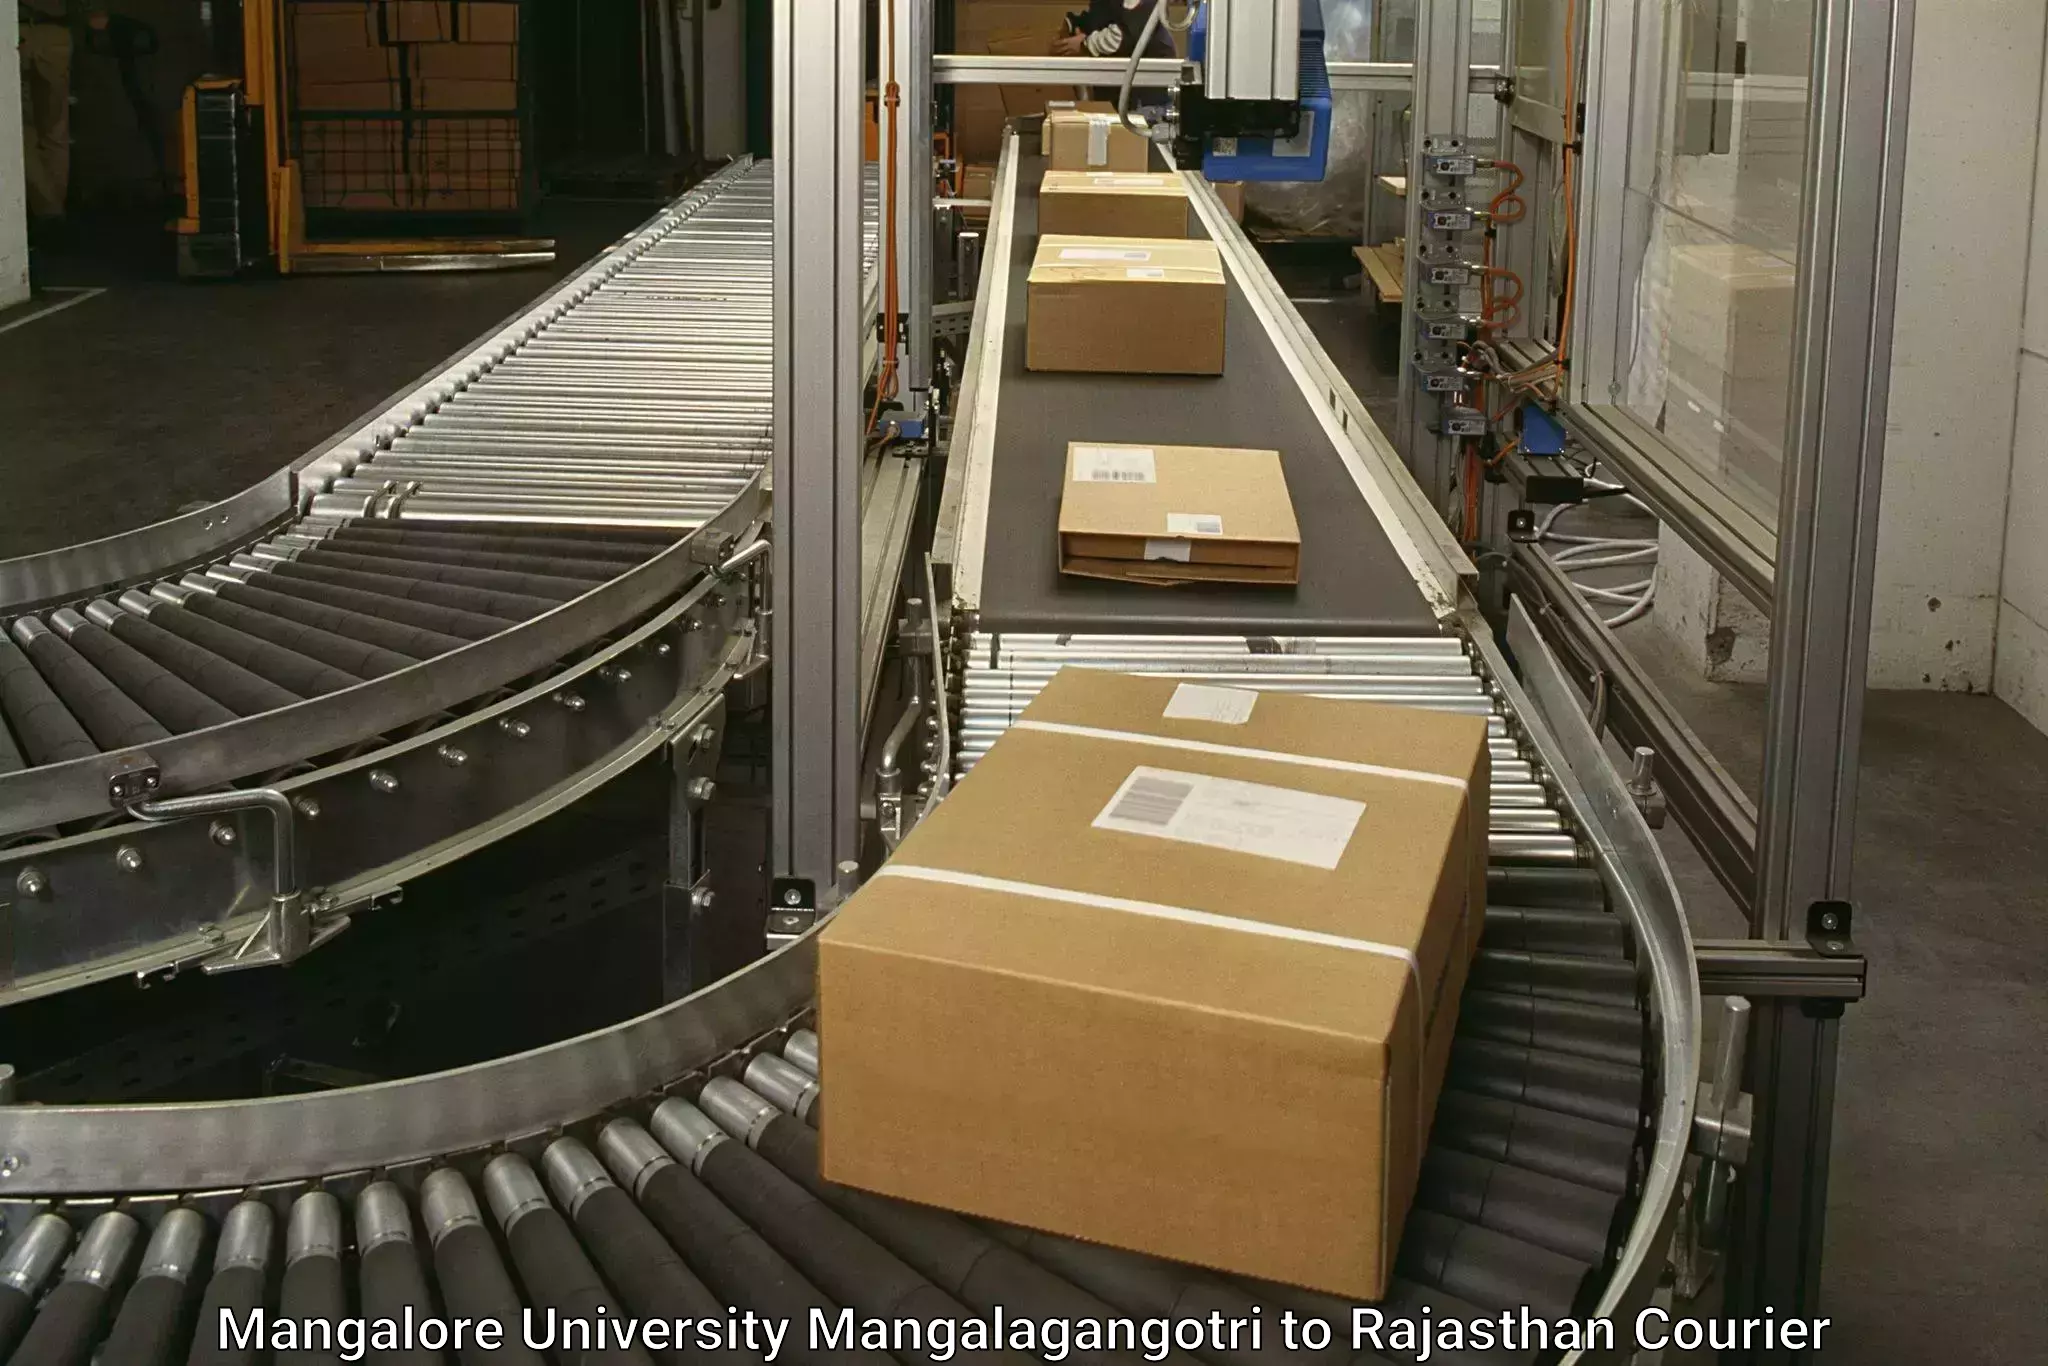 Specialized shipment handling Mangalore University Mangalagangotri to Udaipur